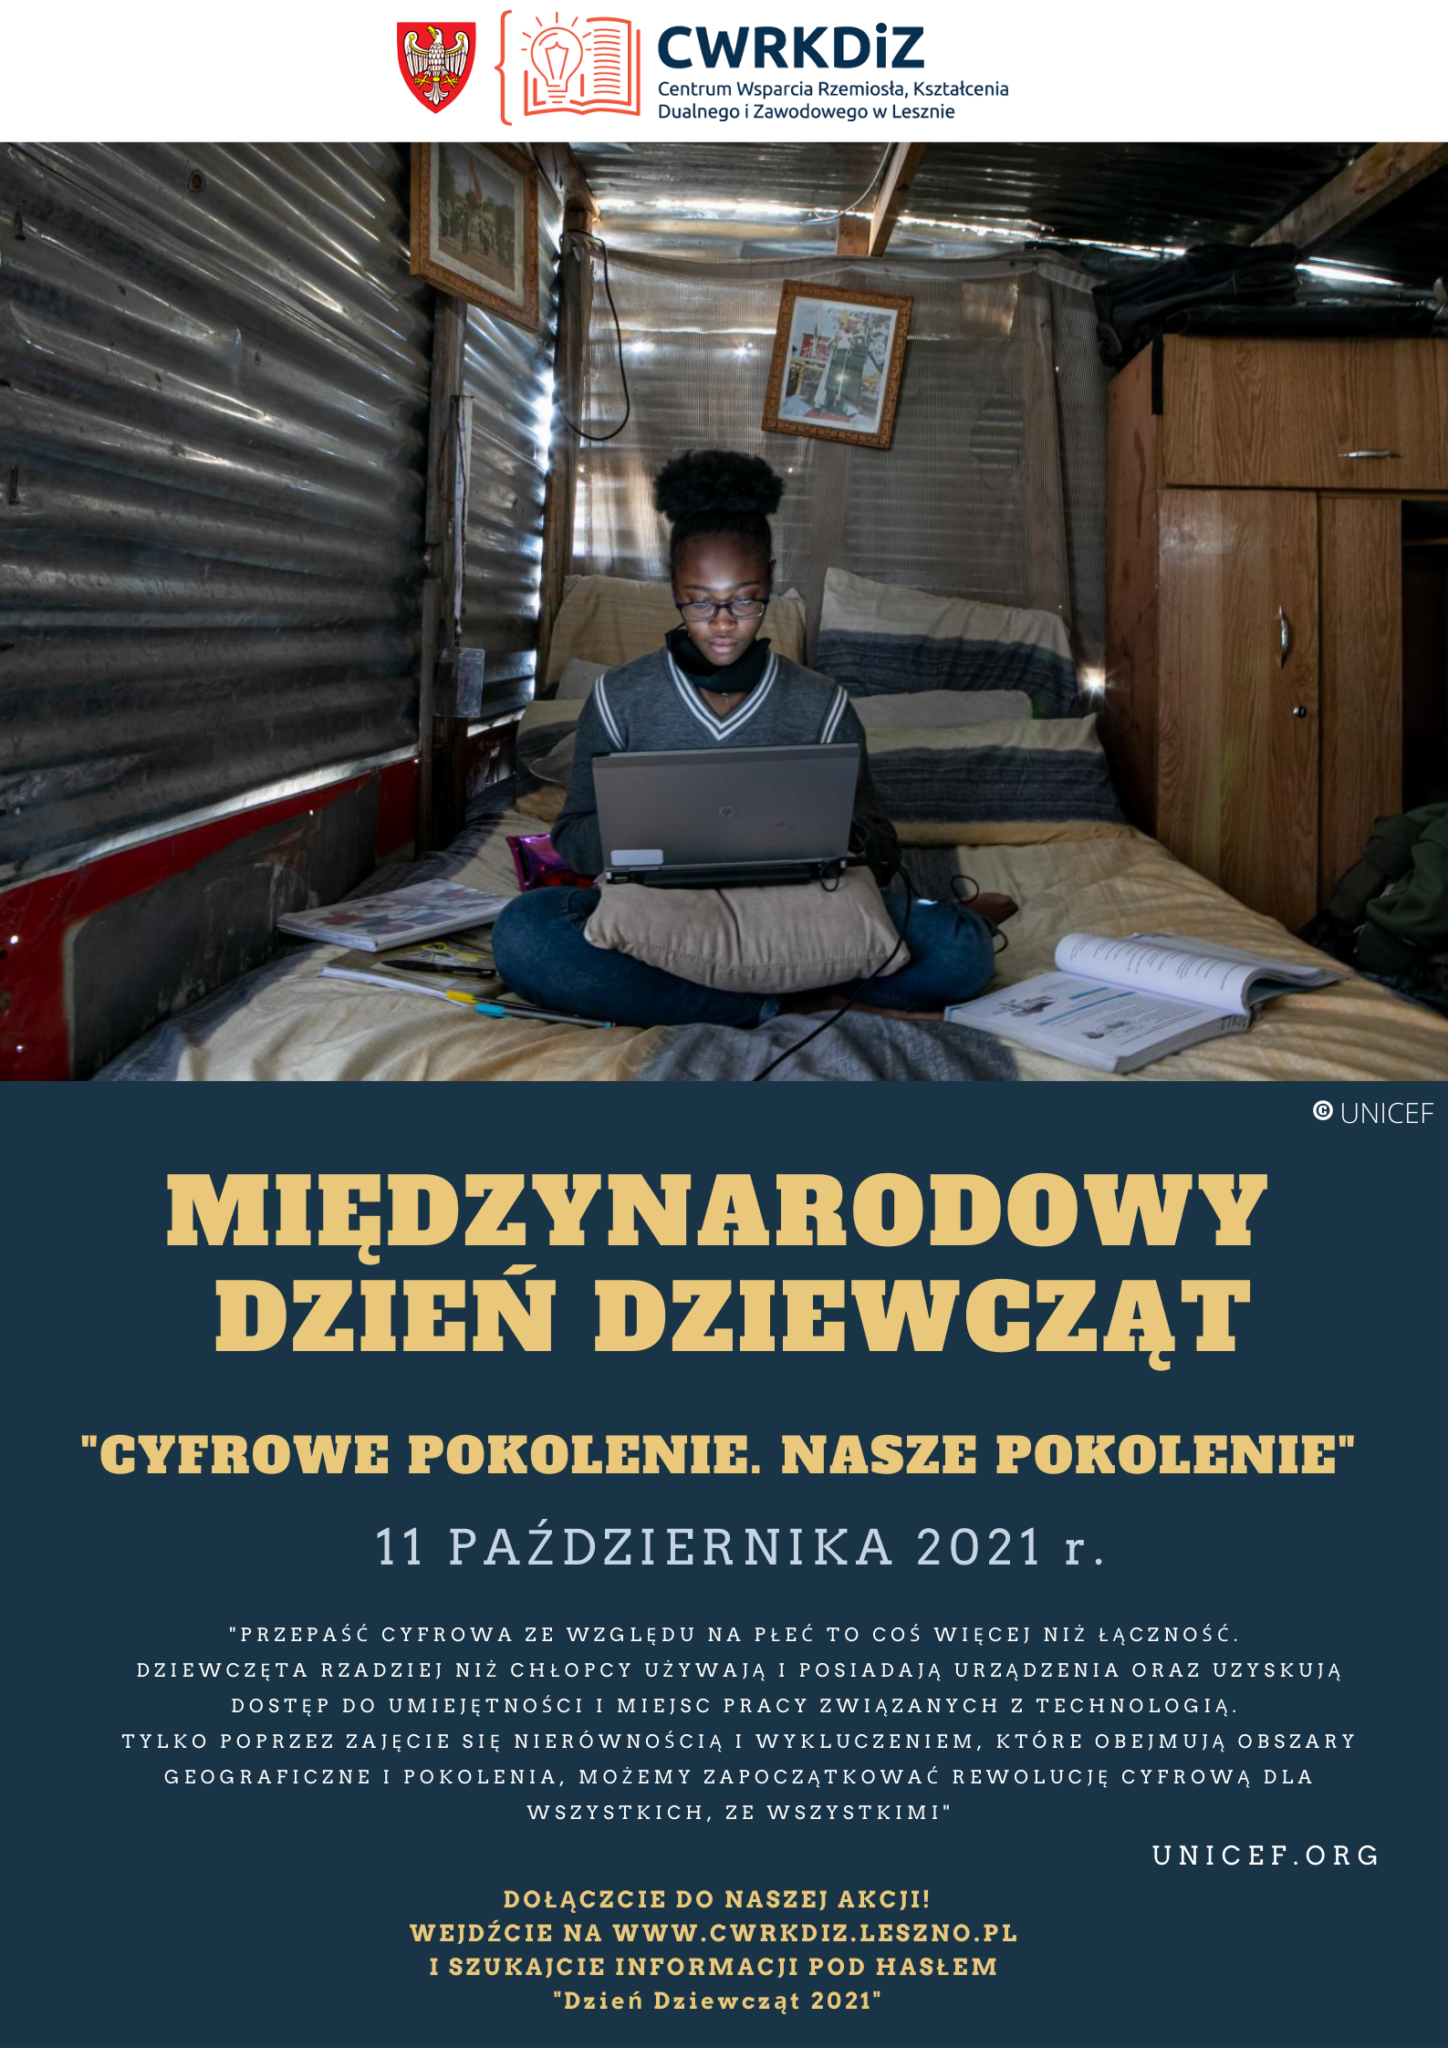 Na plakacie znajduje się logo CWRKDiZ w Lesznie oraz zdjęcie dziewczyny siedzącej przy komputerze w pomieszczeniu z blachy oraz krótka informacja o Międzynarodowym Dniu Dziewcząt.